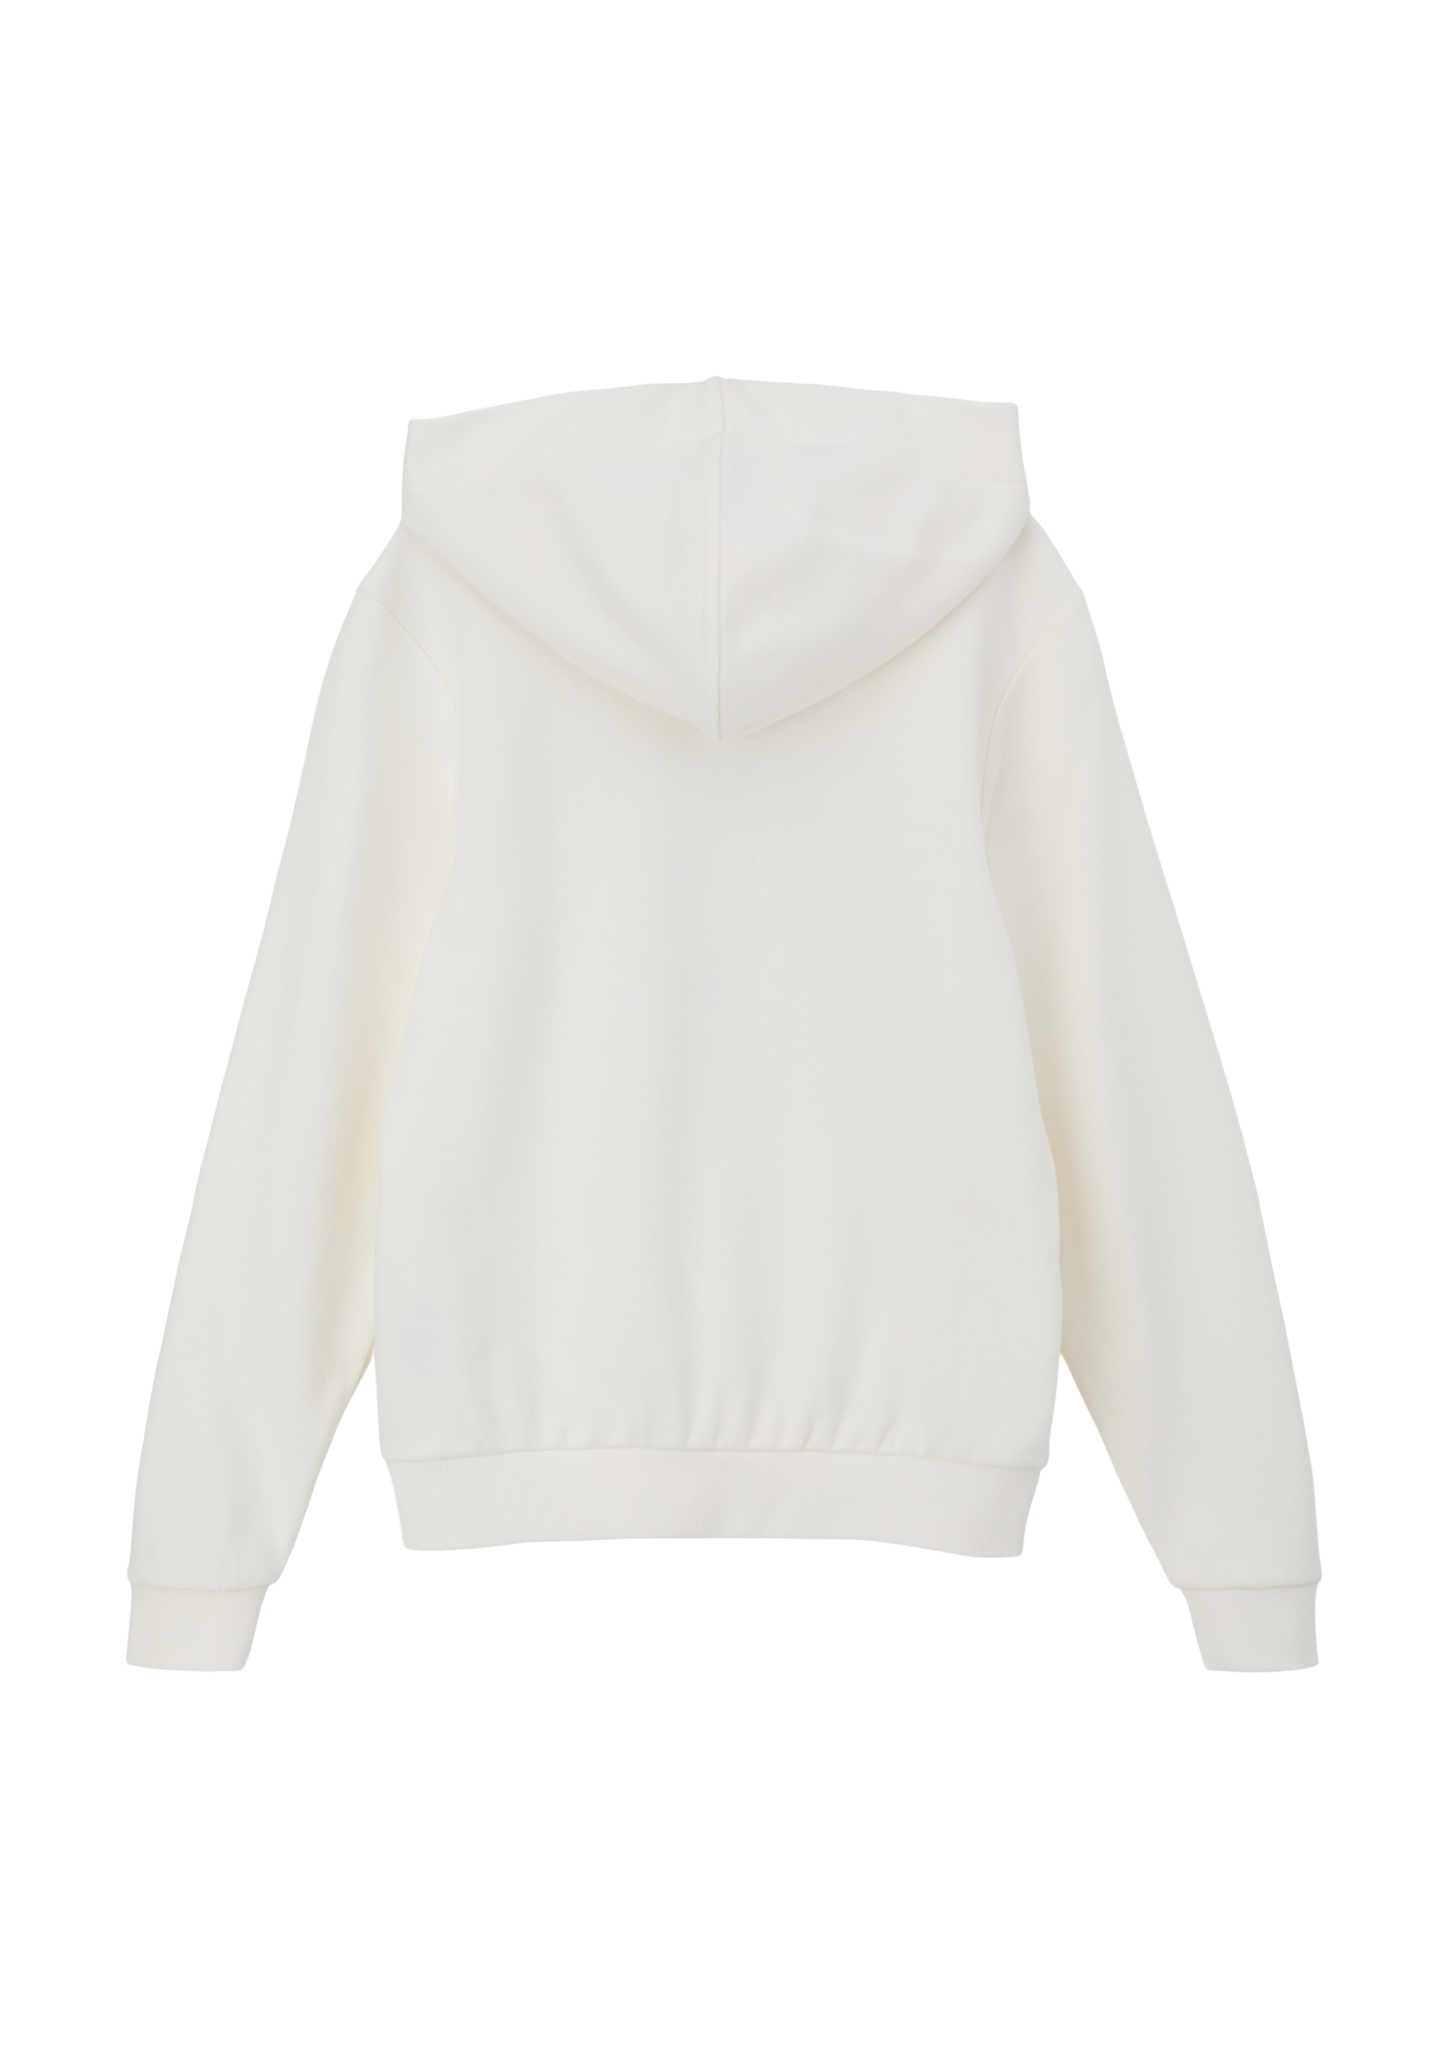 S.OLIVER Sweatshirt 10724602 kaufen | WÖHRL